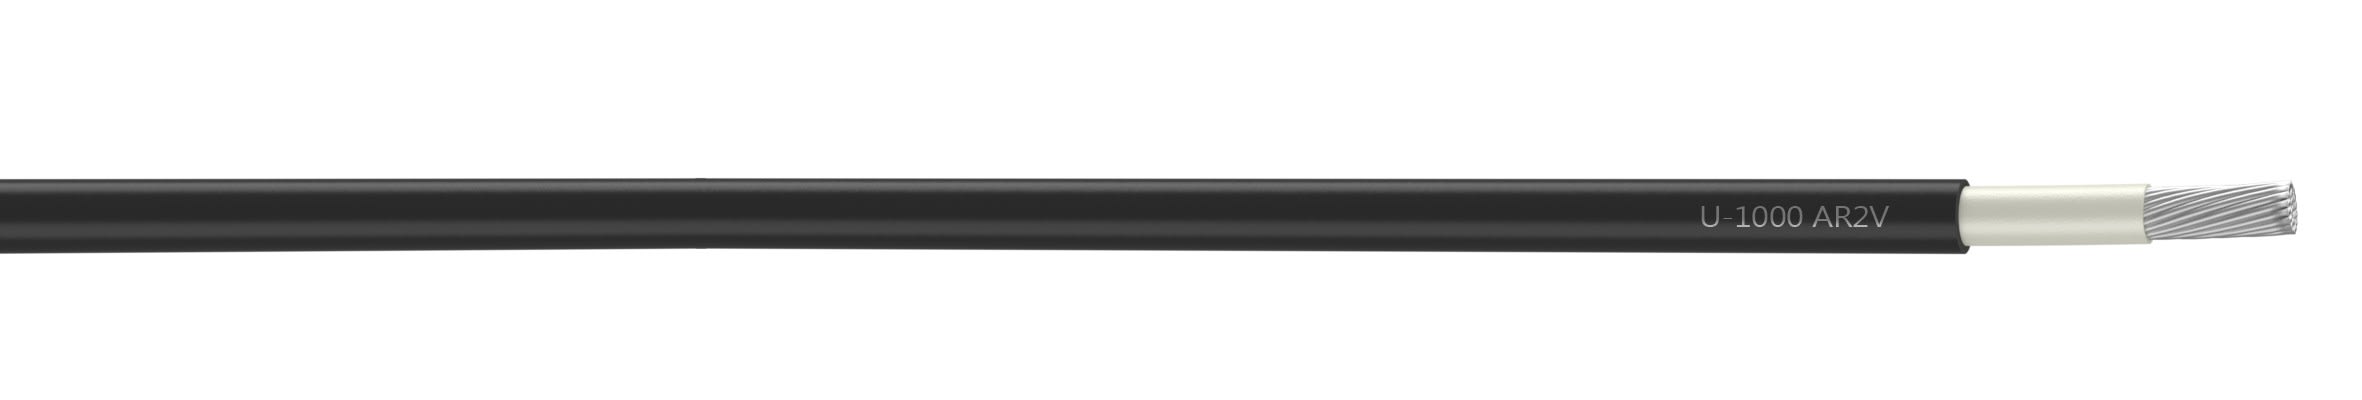 Nexans - Câble rigide U-1000 AR2V aluminium 1x35 longueur à la coupe